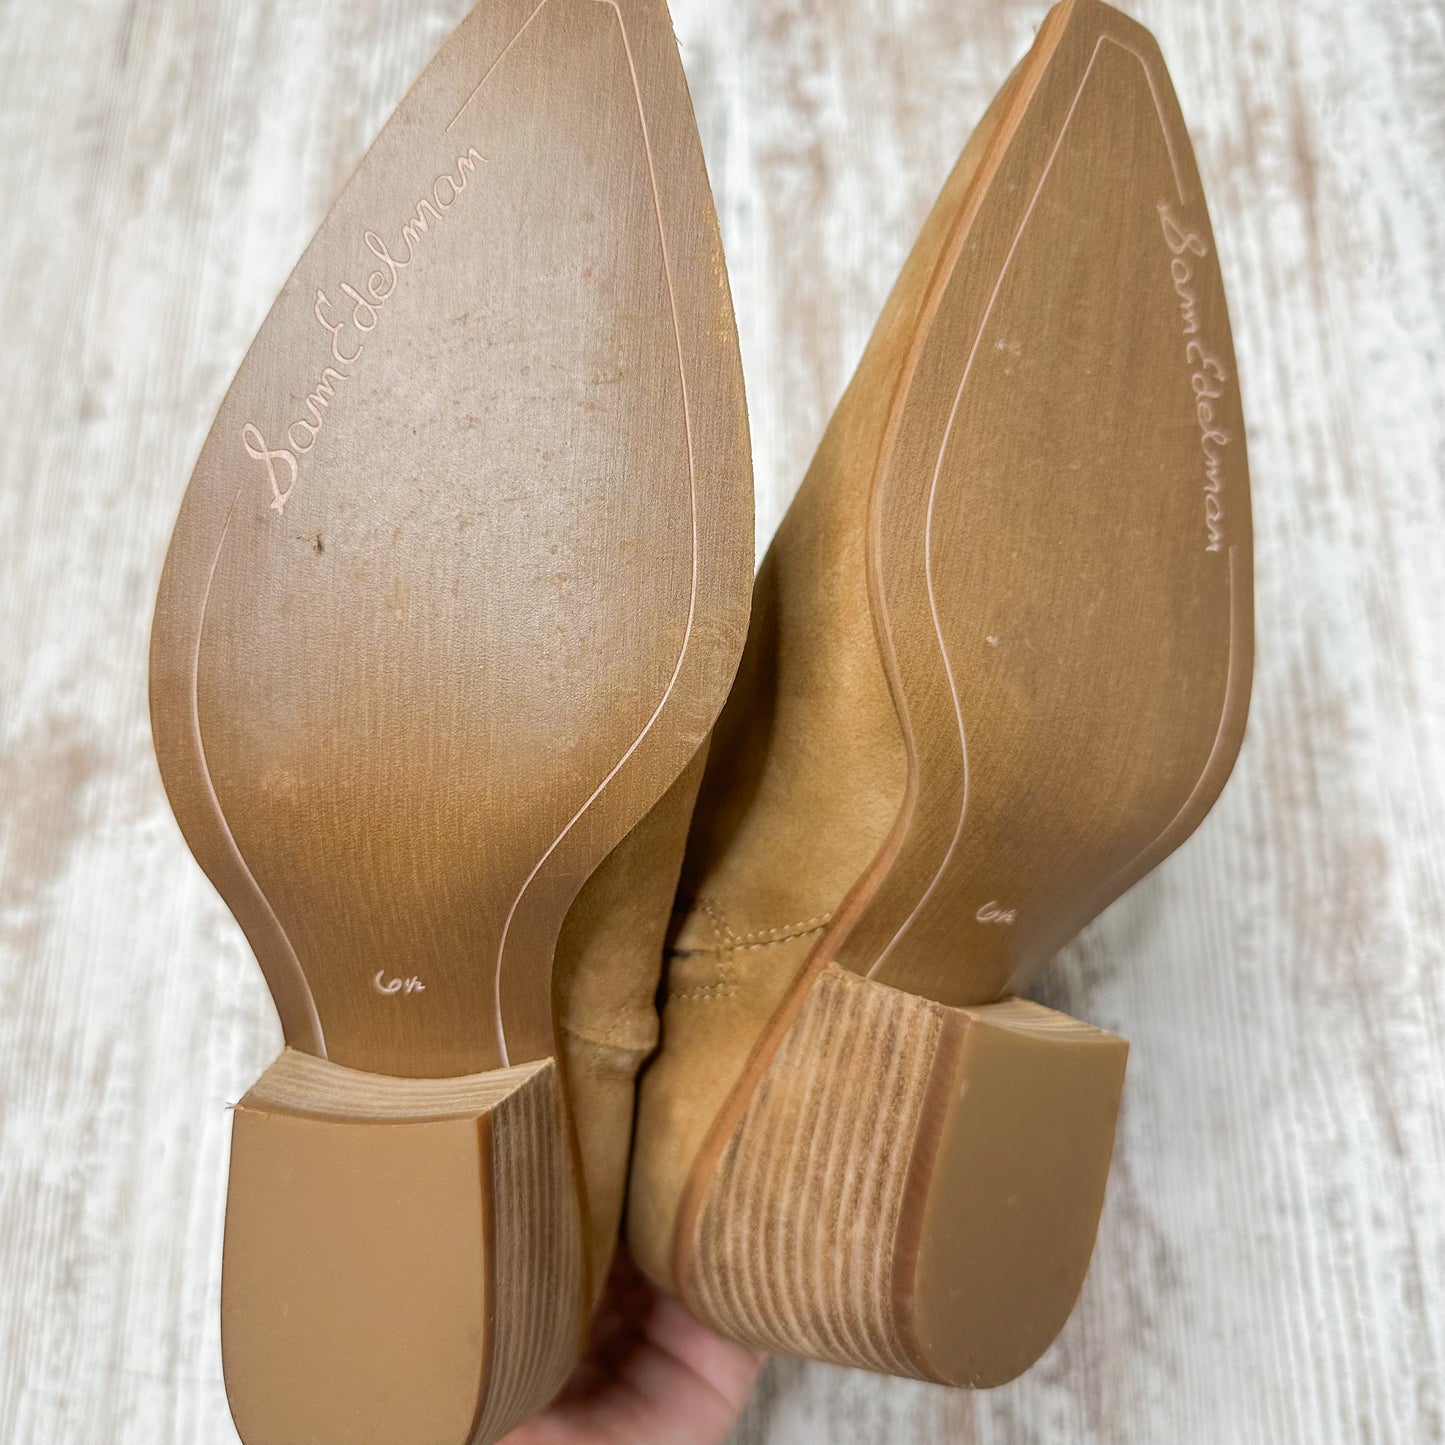 Sam Edelman Wilda Caramel Suede Boots Size 6.5